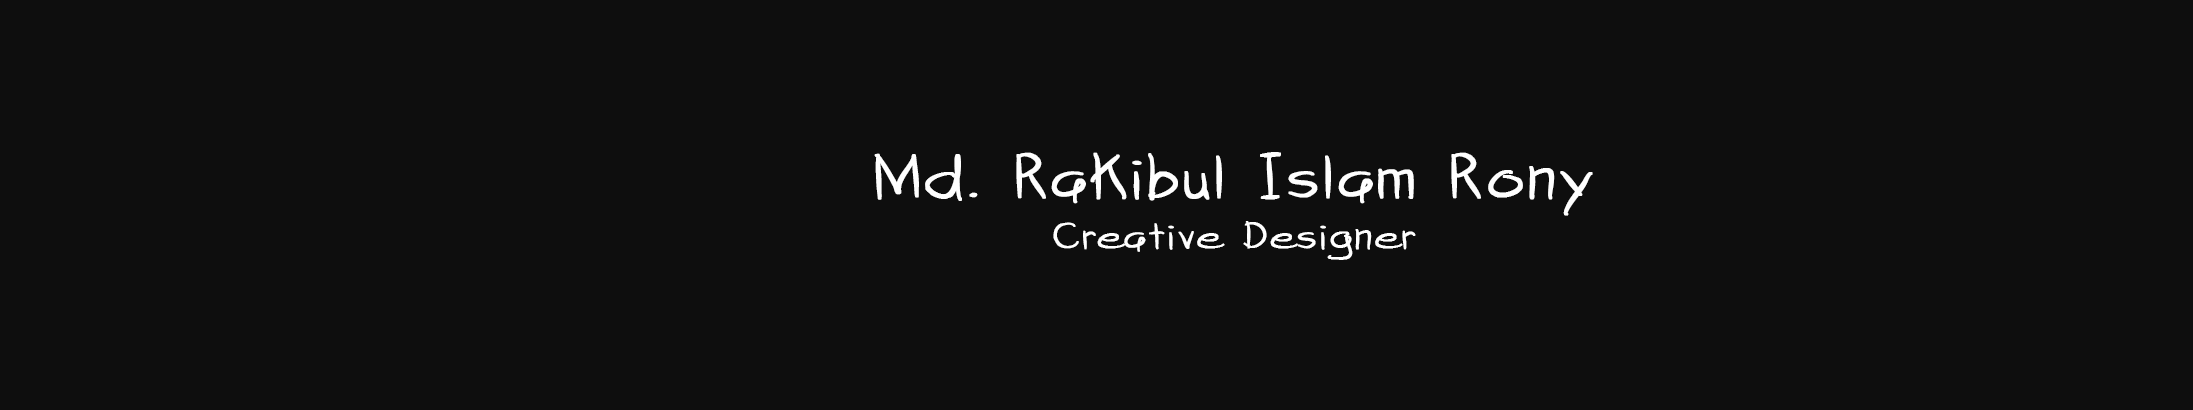 Banner de perfil de Md. Rakibul Islam Rony